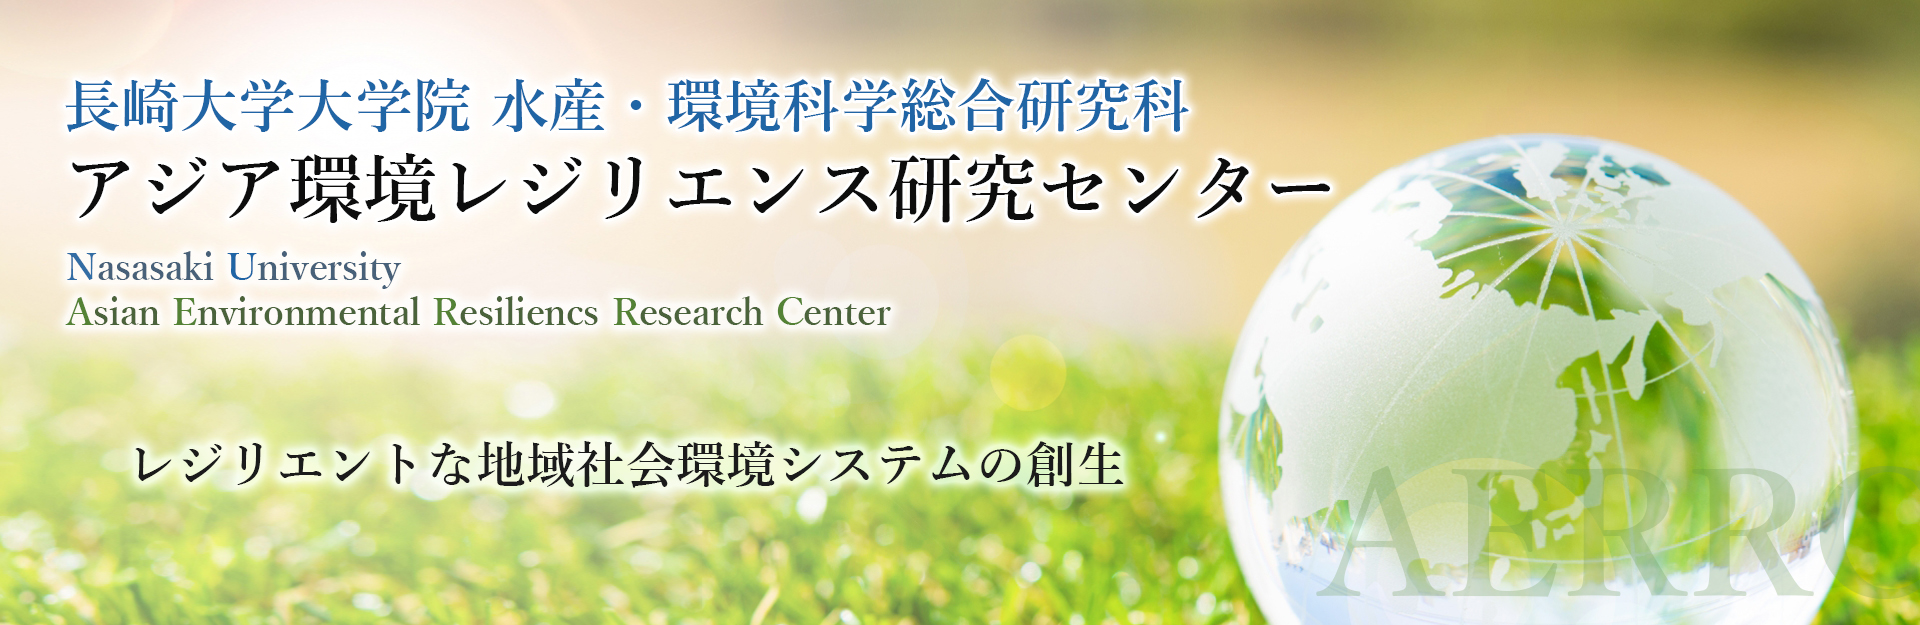 アジア環境レジリエンス研究センター